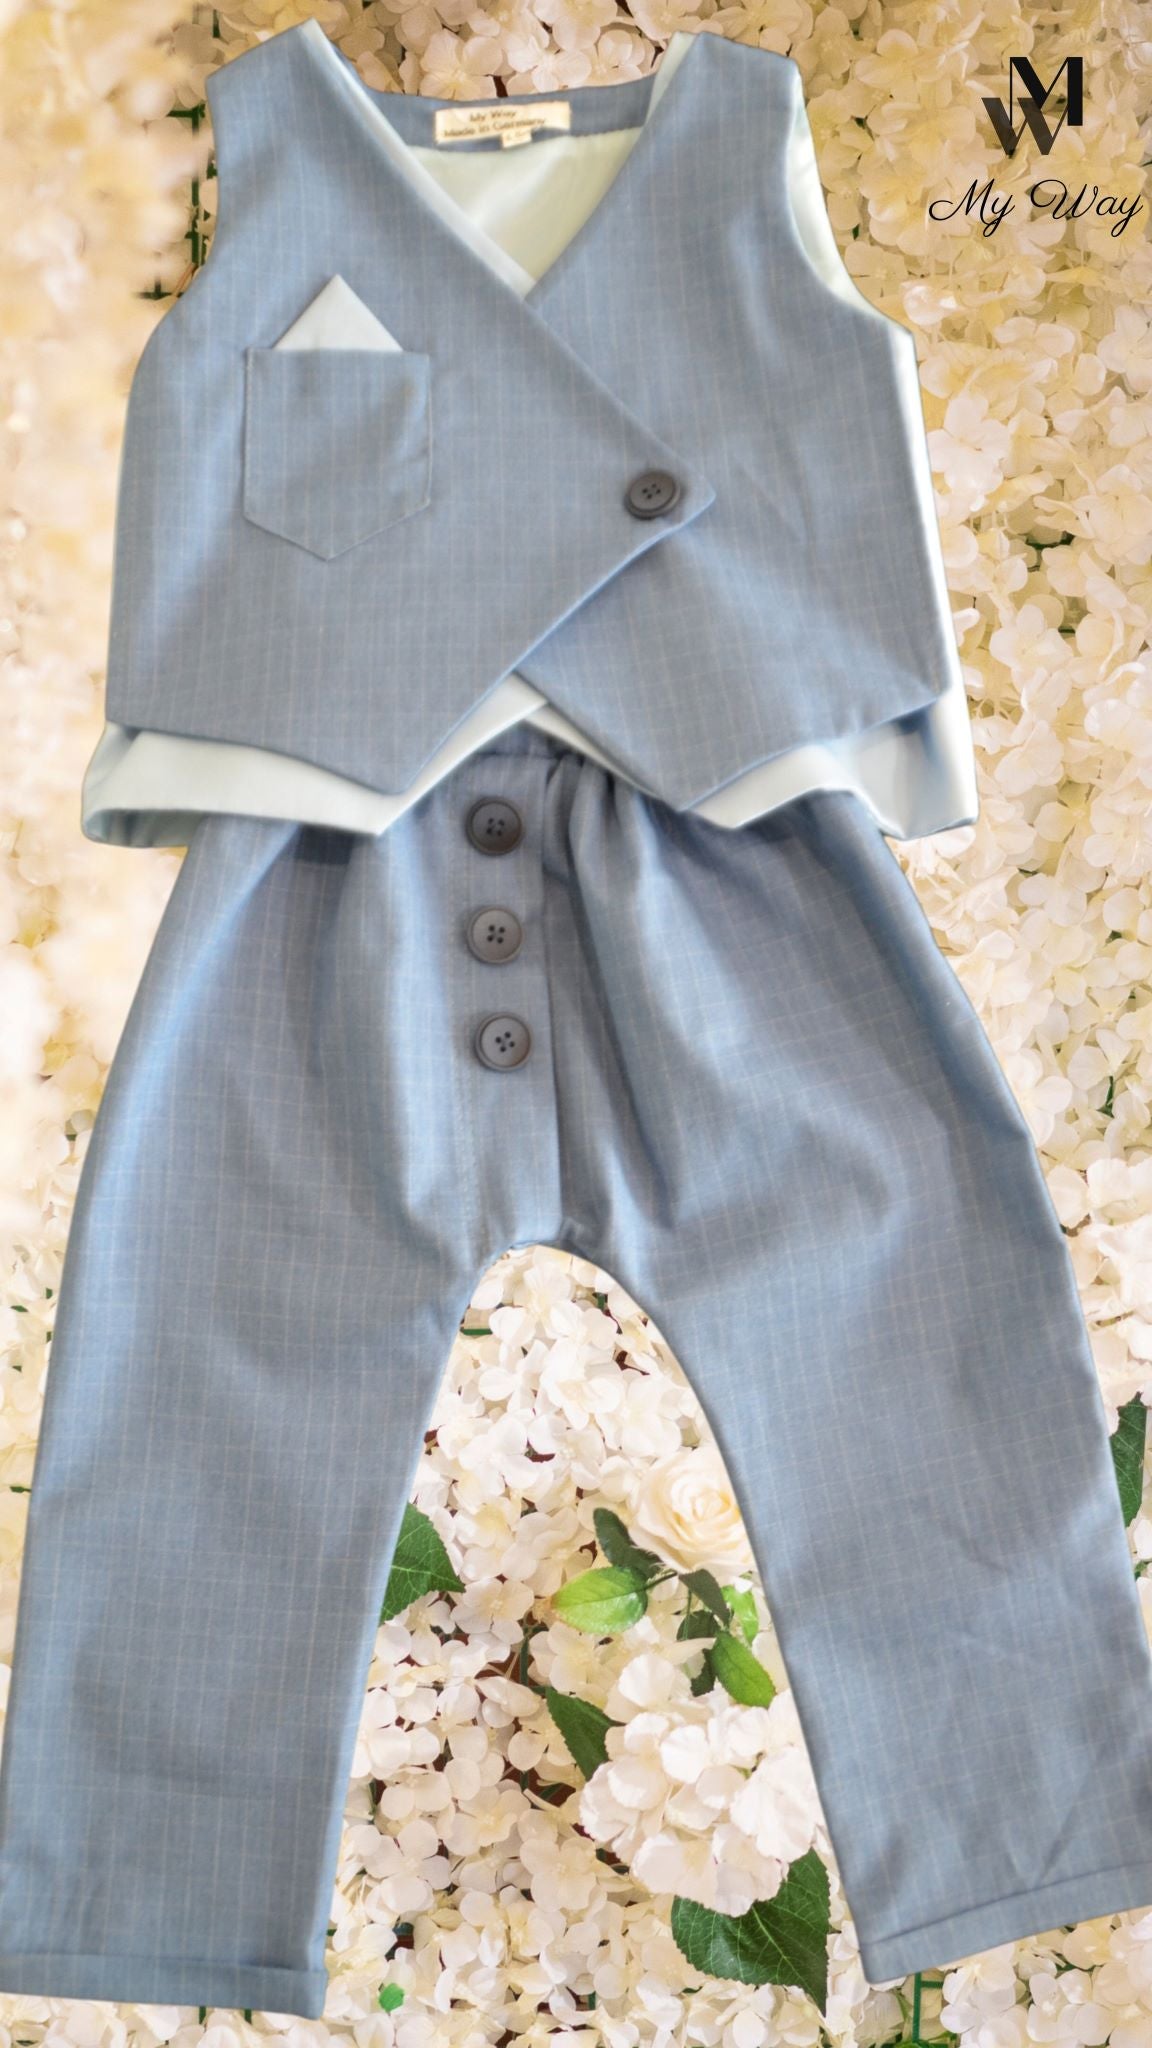 Hochwertige Kinderanzüge von My Way D&A Blau Kinder-Anzüge online kaufen Anzug für Jungen mit Weste- Blau zu günstigen Preisen